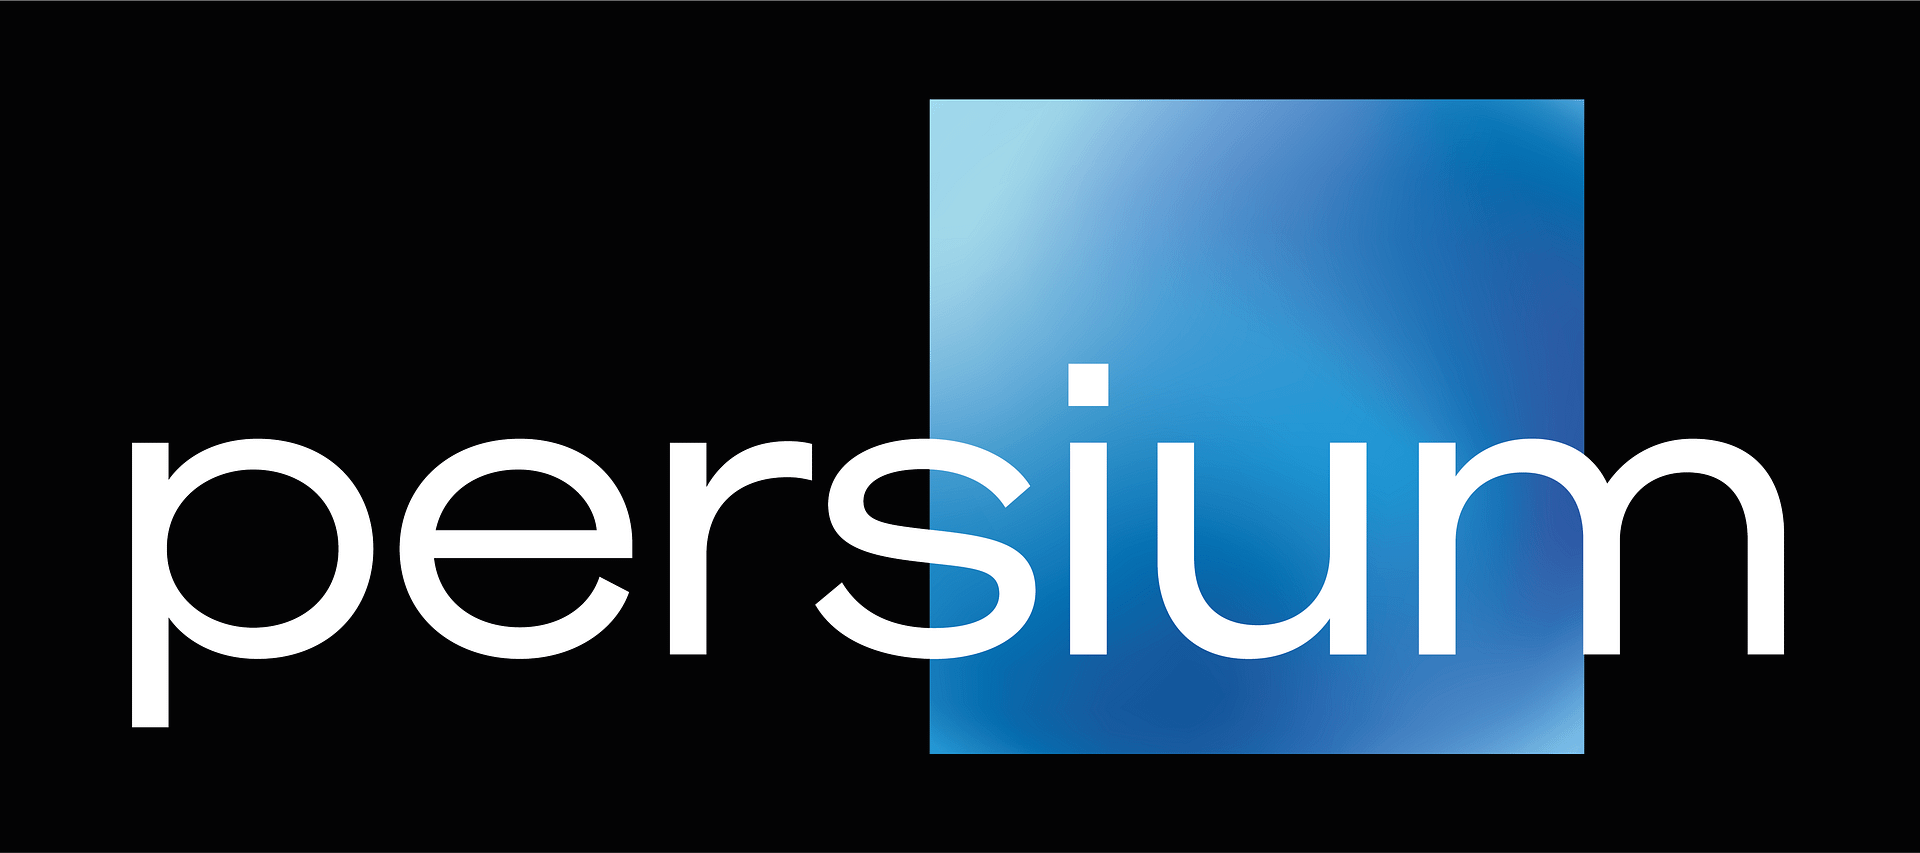 Persium